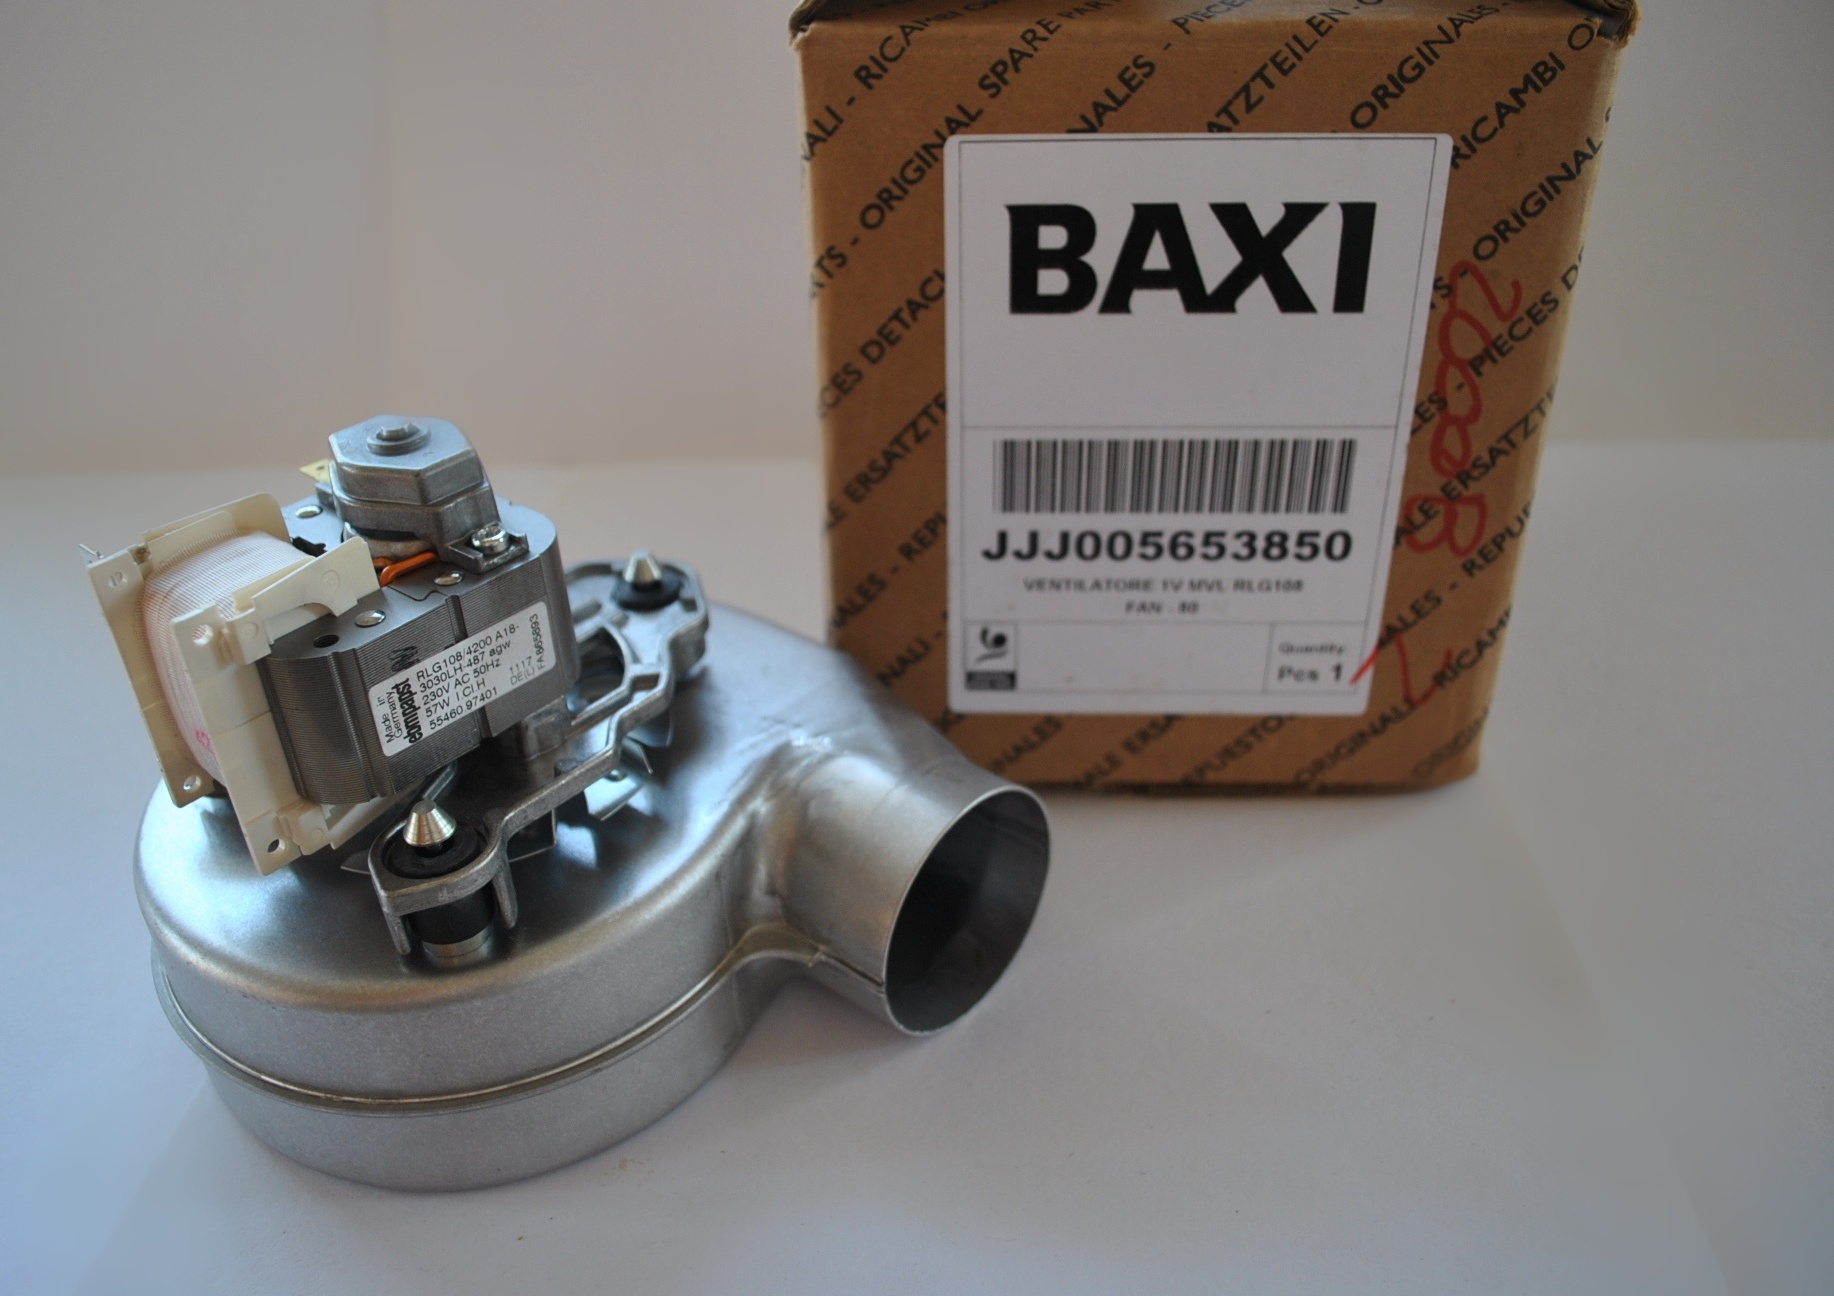 Baxi вентилятор Baxi 5653850